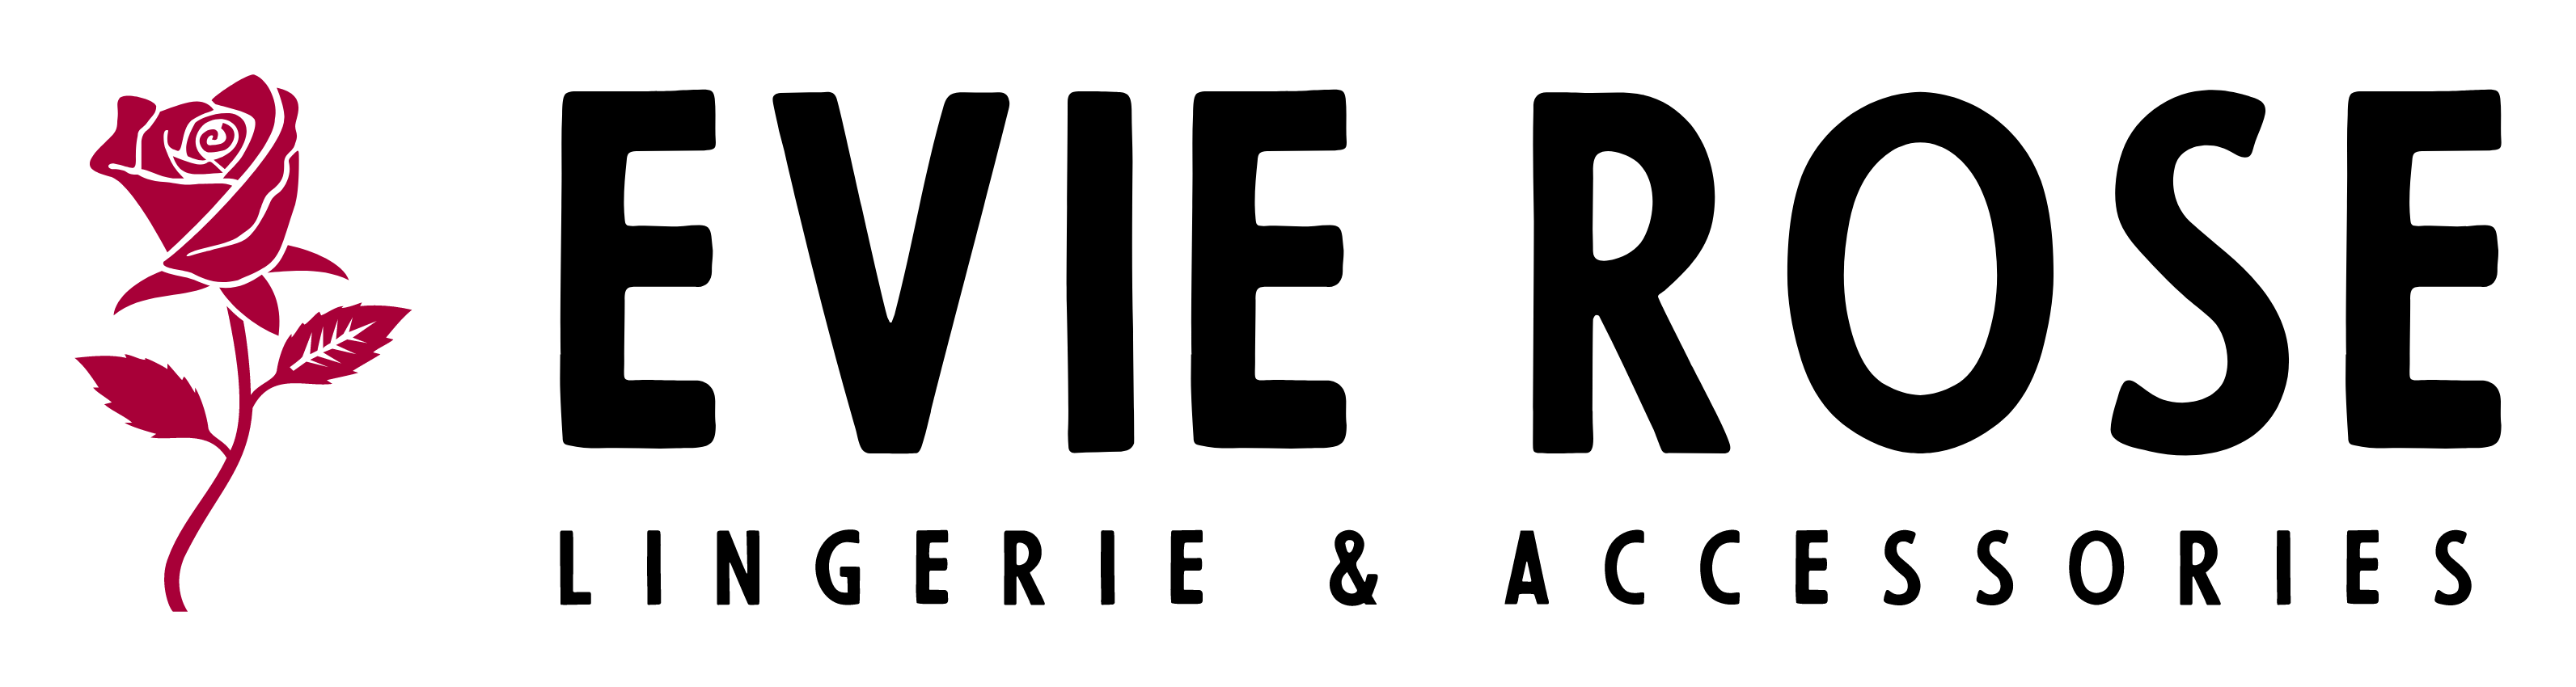 Evie Rose Lingerie Logo